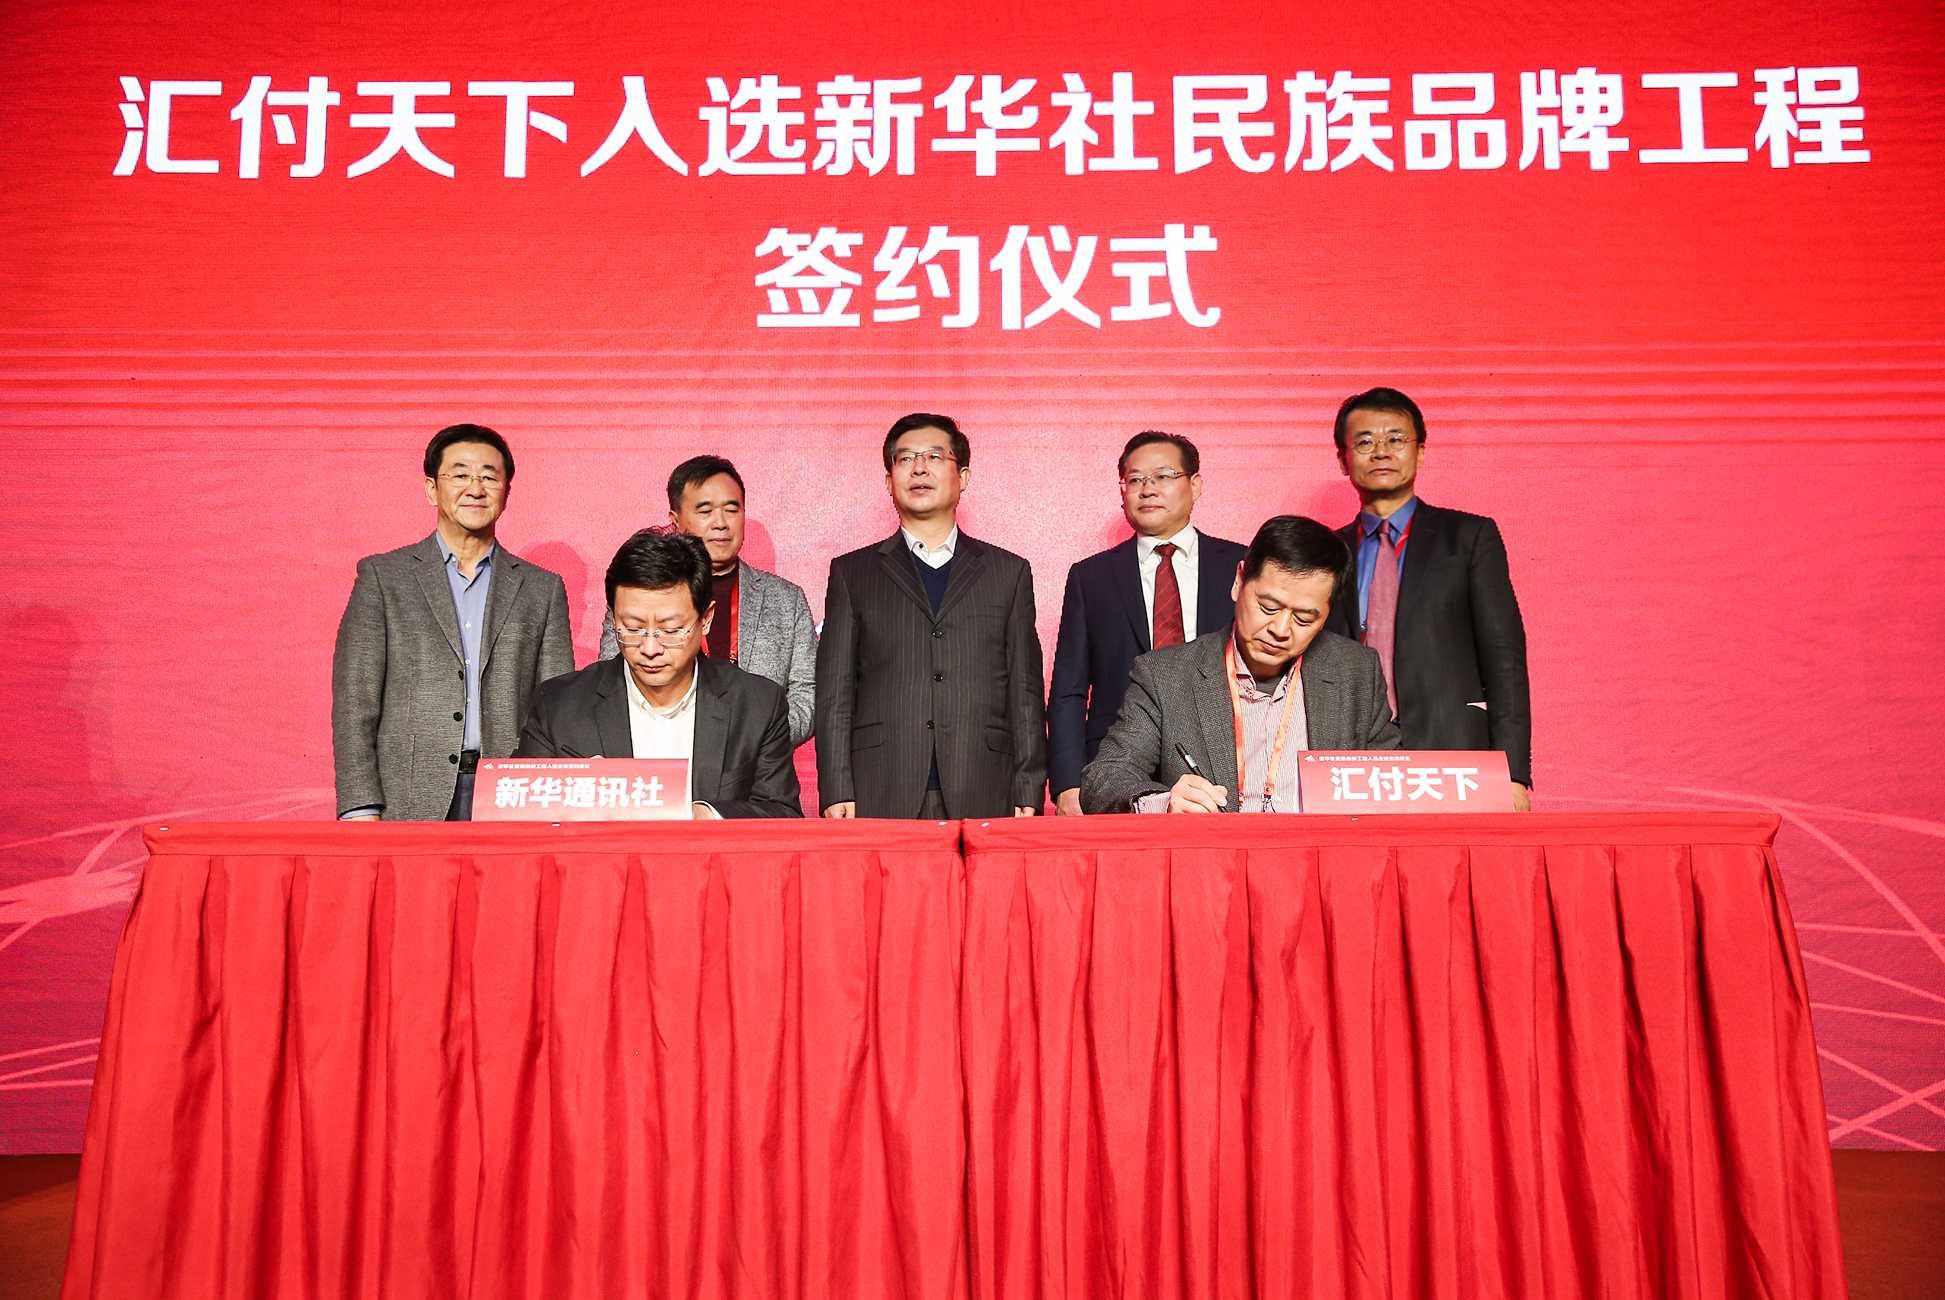 汇付天下有限公司董事长兼CEO周晔、新华社新闻信息中心主任储学军代表双方签约。